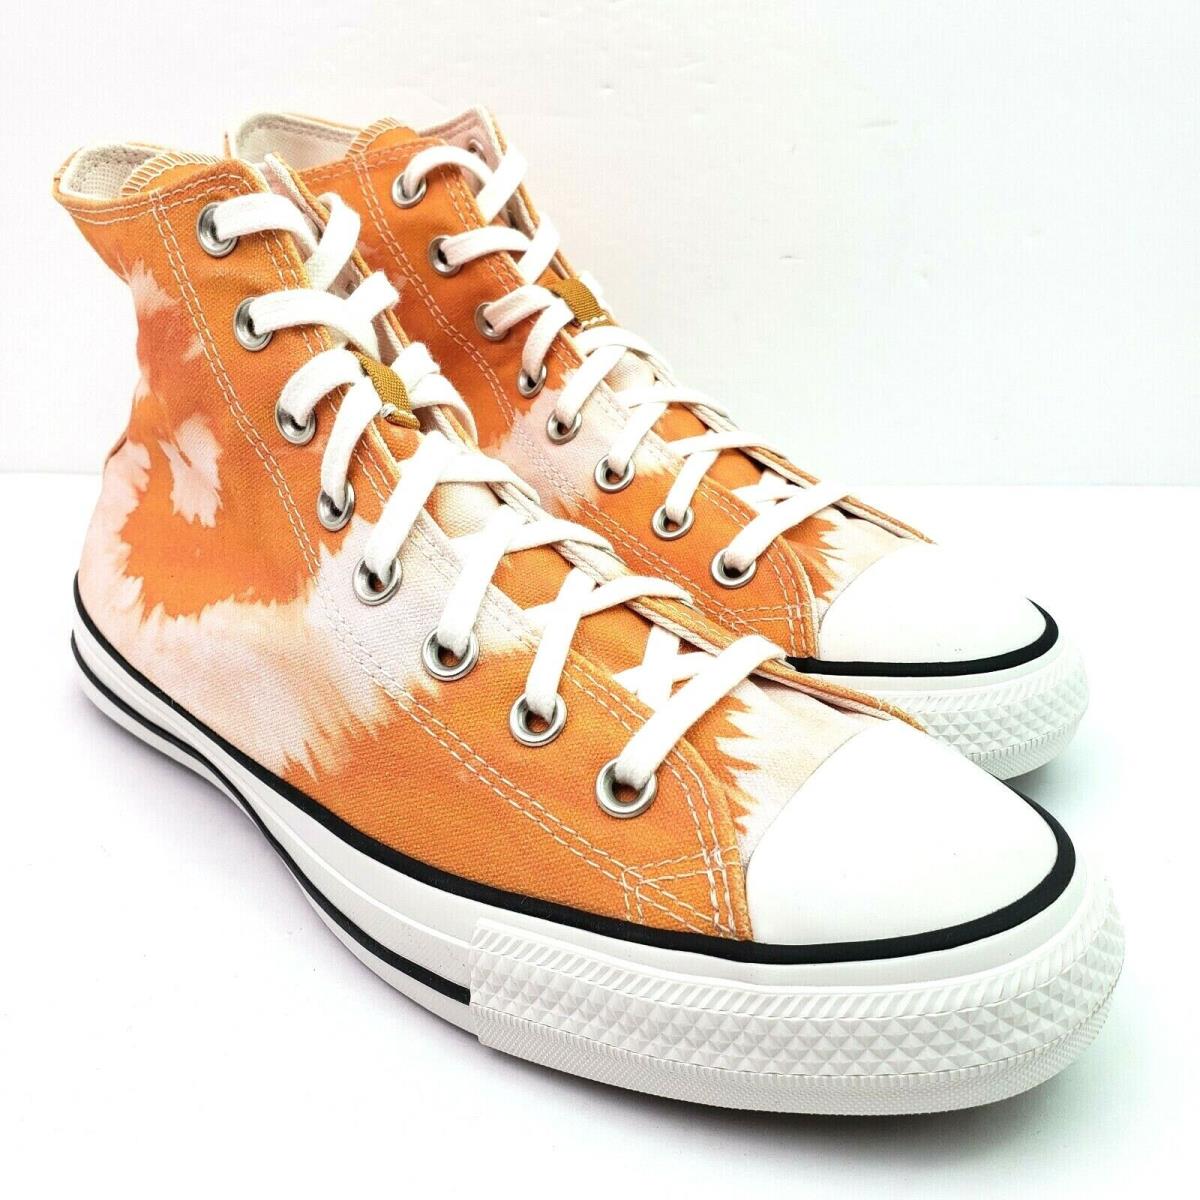 Converse Ctas Hi Summer Wave Mens Sz 9 Wms Sz 11 Amber Ochre White Sneaker Shoe